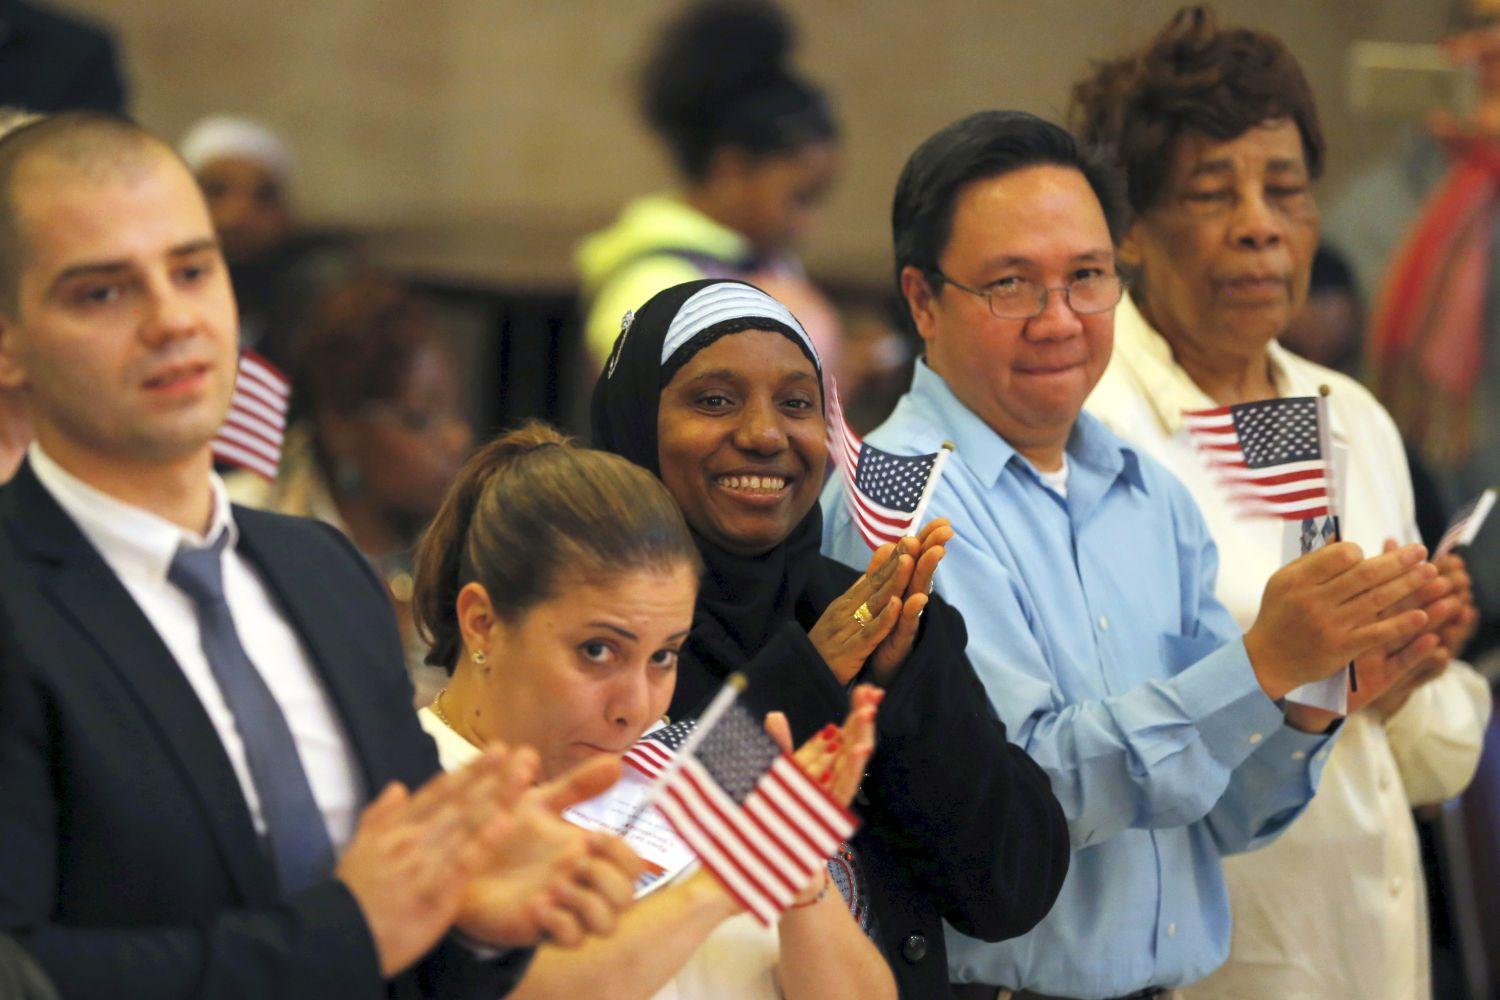 Új amerikai állampolgárok az eskütétel után. A kultúrális sokszínűség az amerikai identitás szerves részét képezi Foner szerint